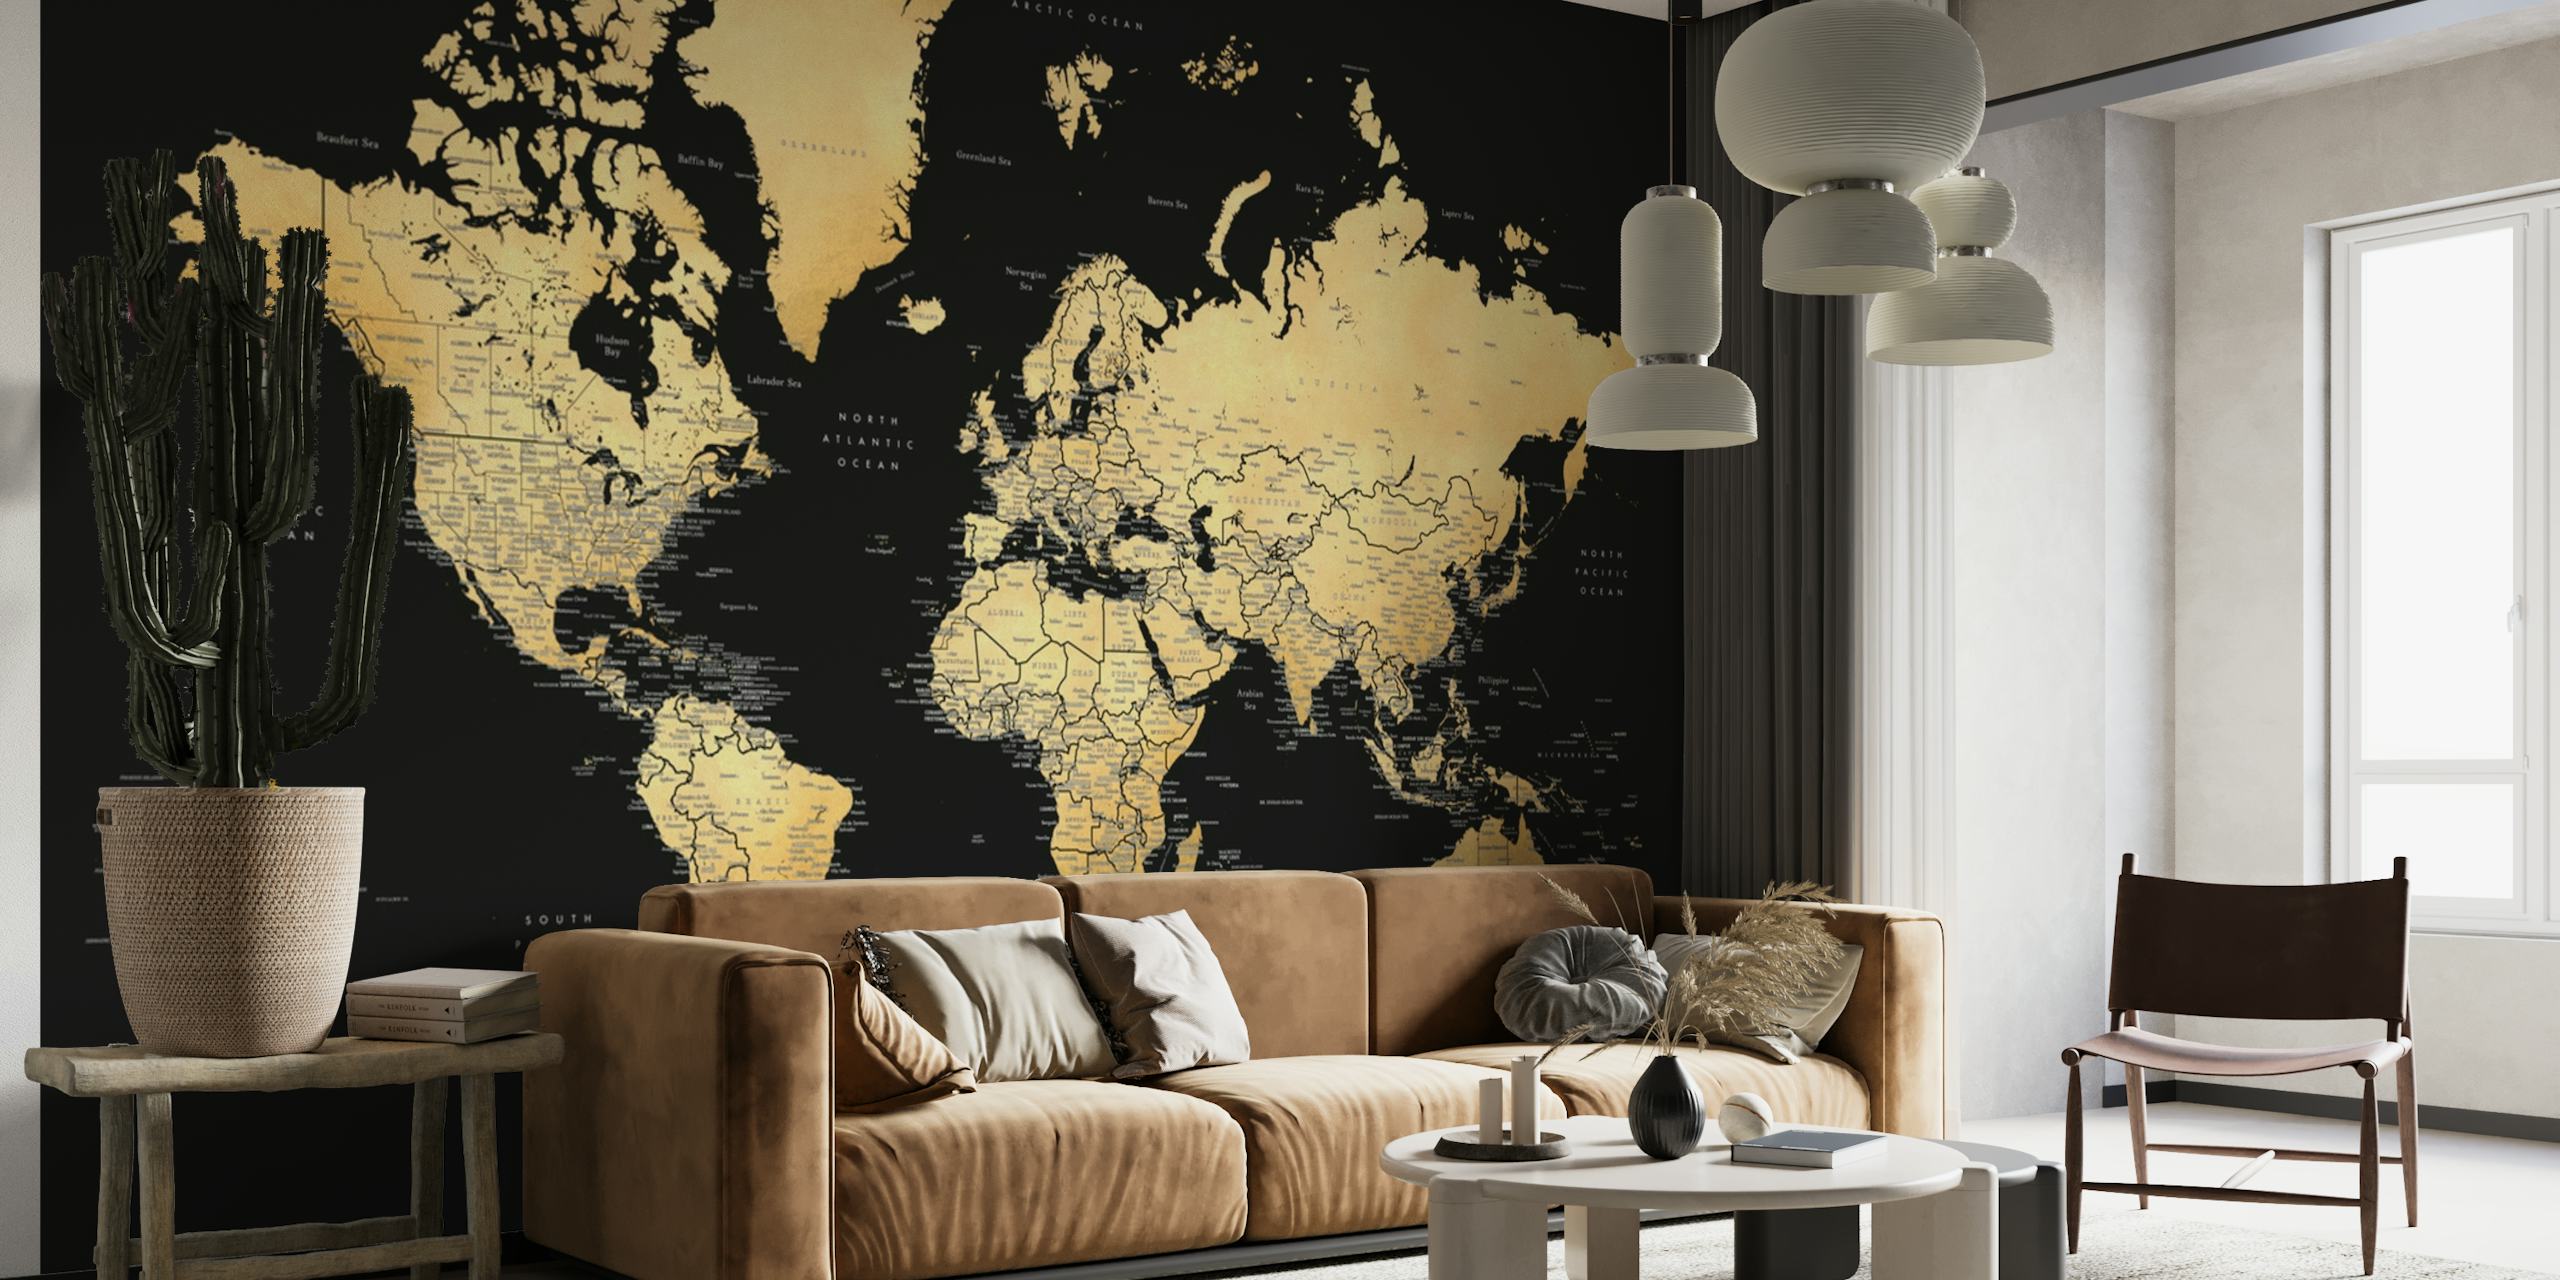 Elegante mural de pared con un mapa mundial en ricos tonos sepia y etiquetas detalladas